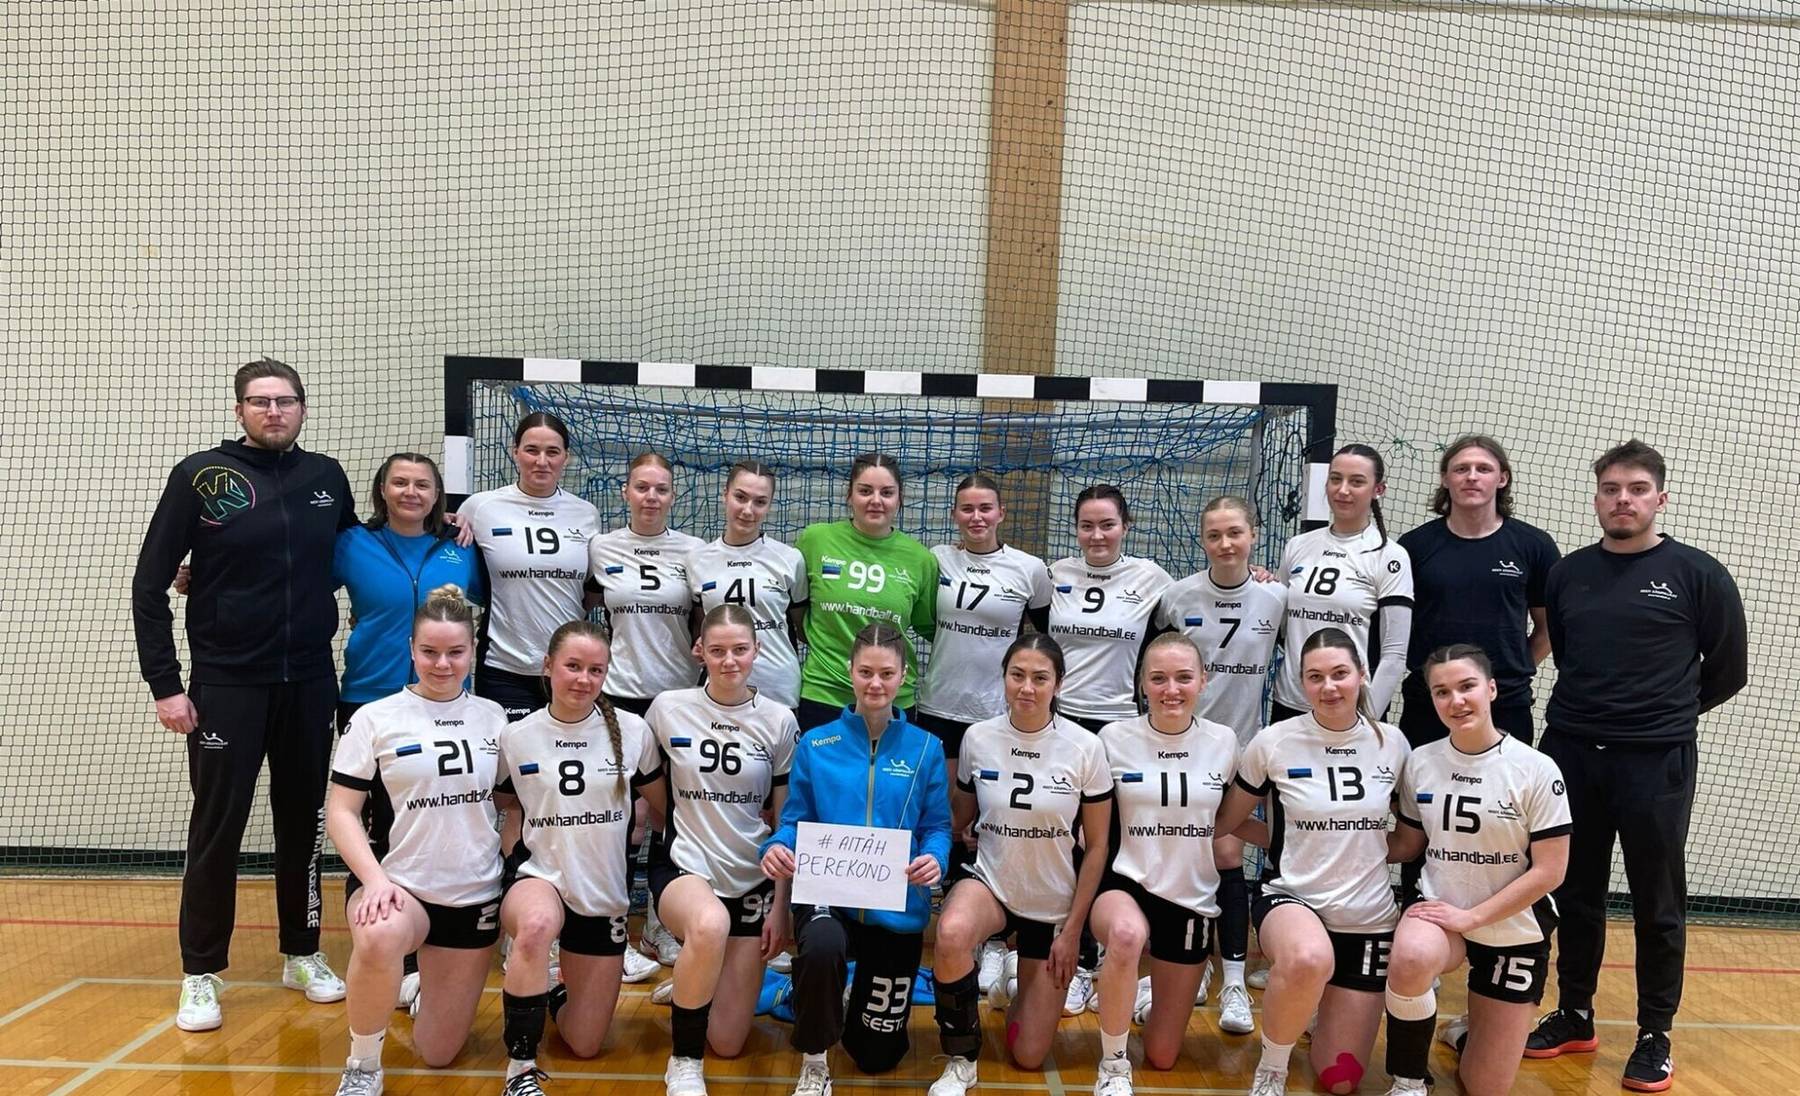 Eesti naiste käsipallikoondis kutsub koos EOK-ga valge kaardi päeval oma perekonda ja toetajaid tänama